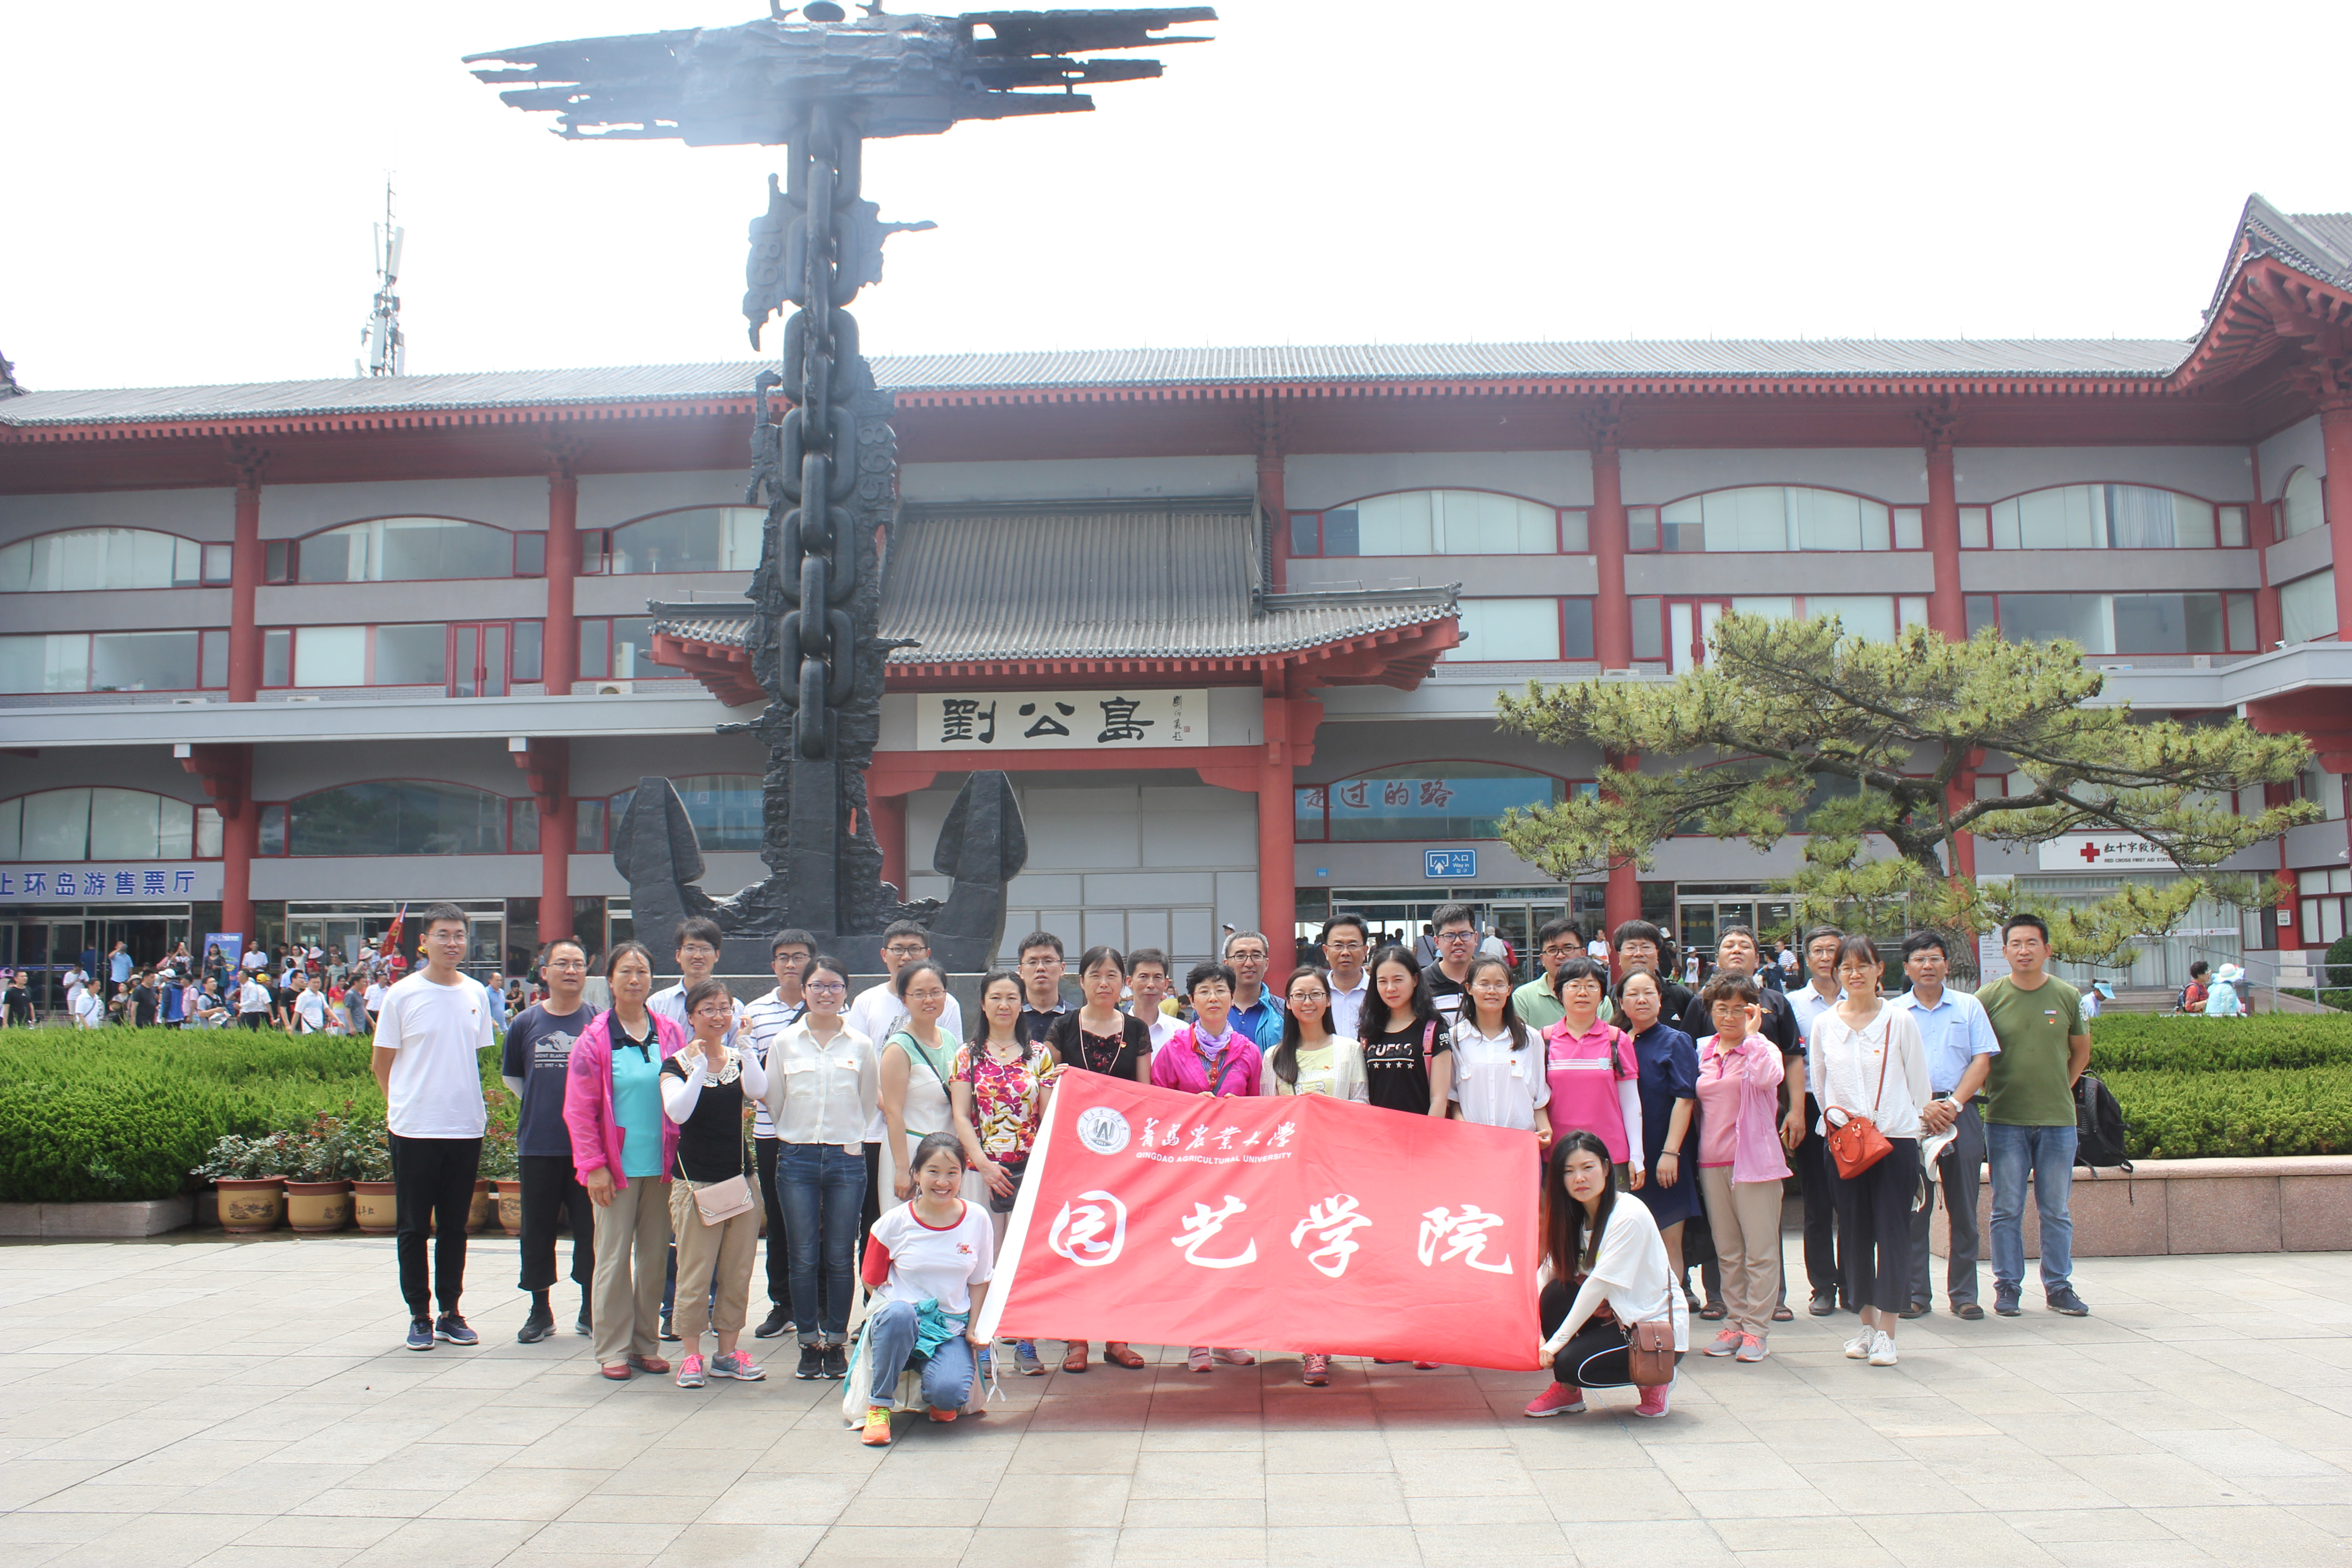 垂杨柳中心小学师生参加潘家园第十四届全国红色收藏展